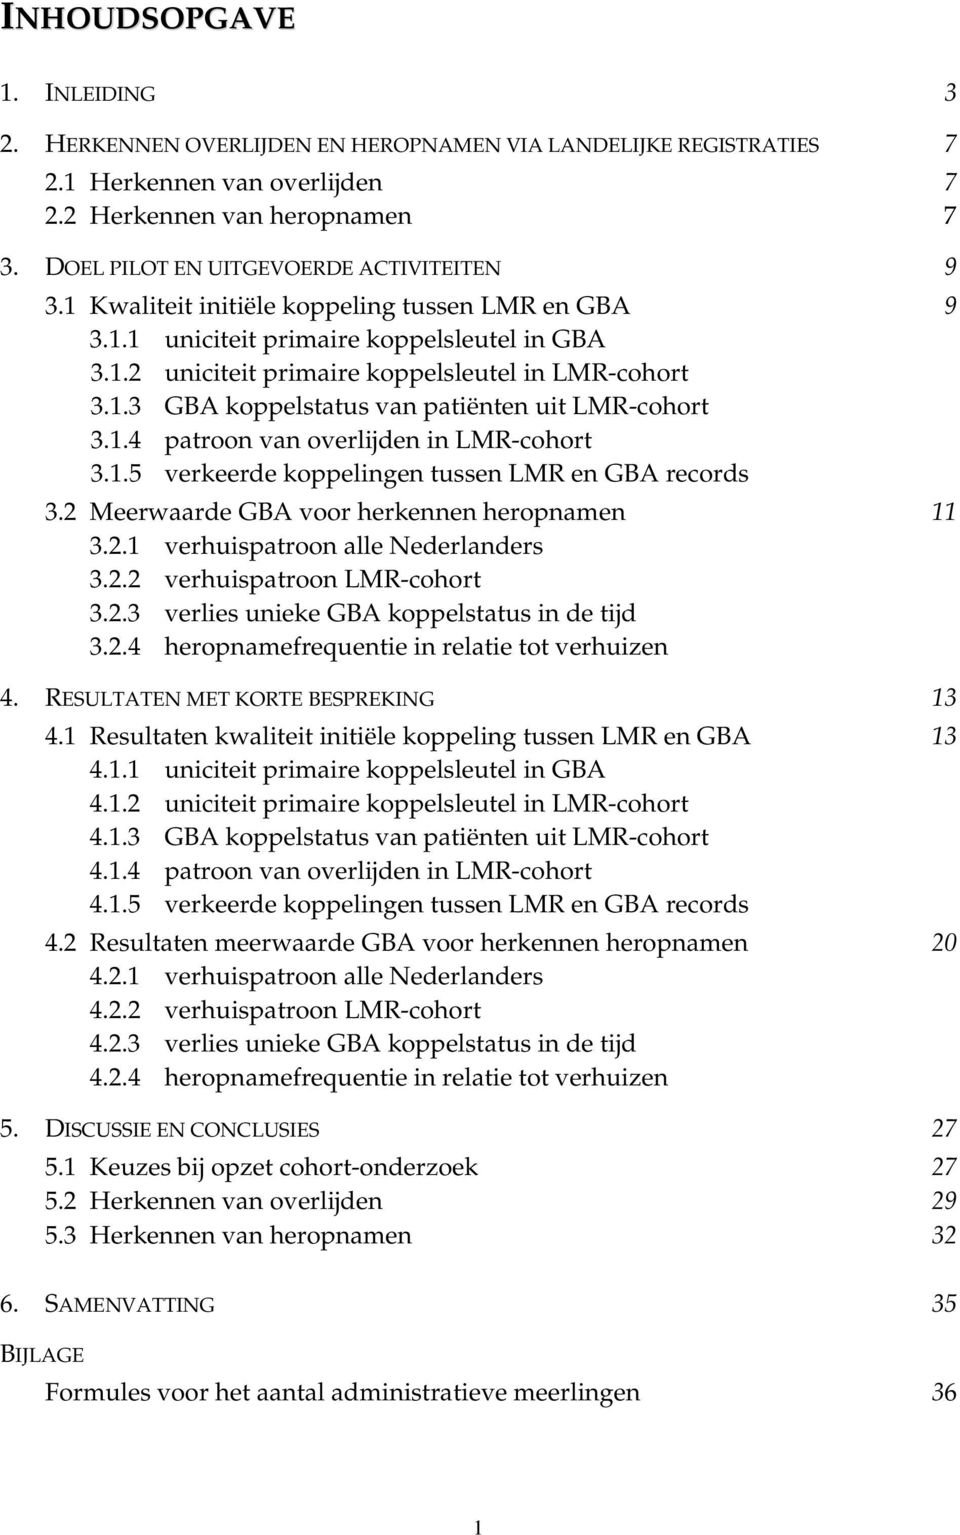 .3 GBA koppelstatus van patiënten uit LMR-cohort 3..4 patroon van overlijden in LMR-cohort 3..5 verkeerde koppelingen tussen LMR en GBA records 3.2 Meerwaarde GBA voor herkennen heropnamen 3.2. verhuispatroon alle Nederlanders 3.